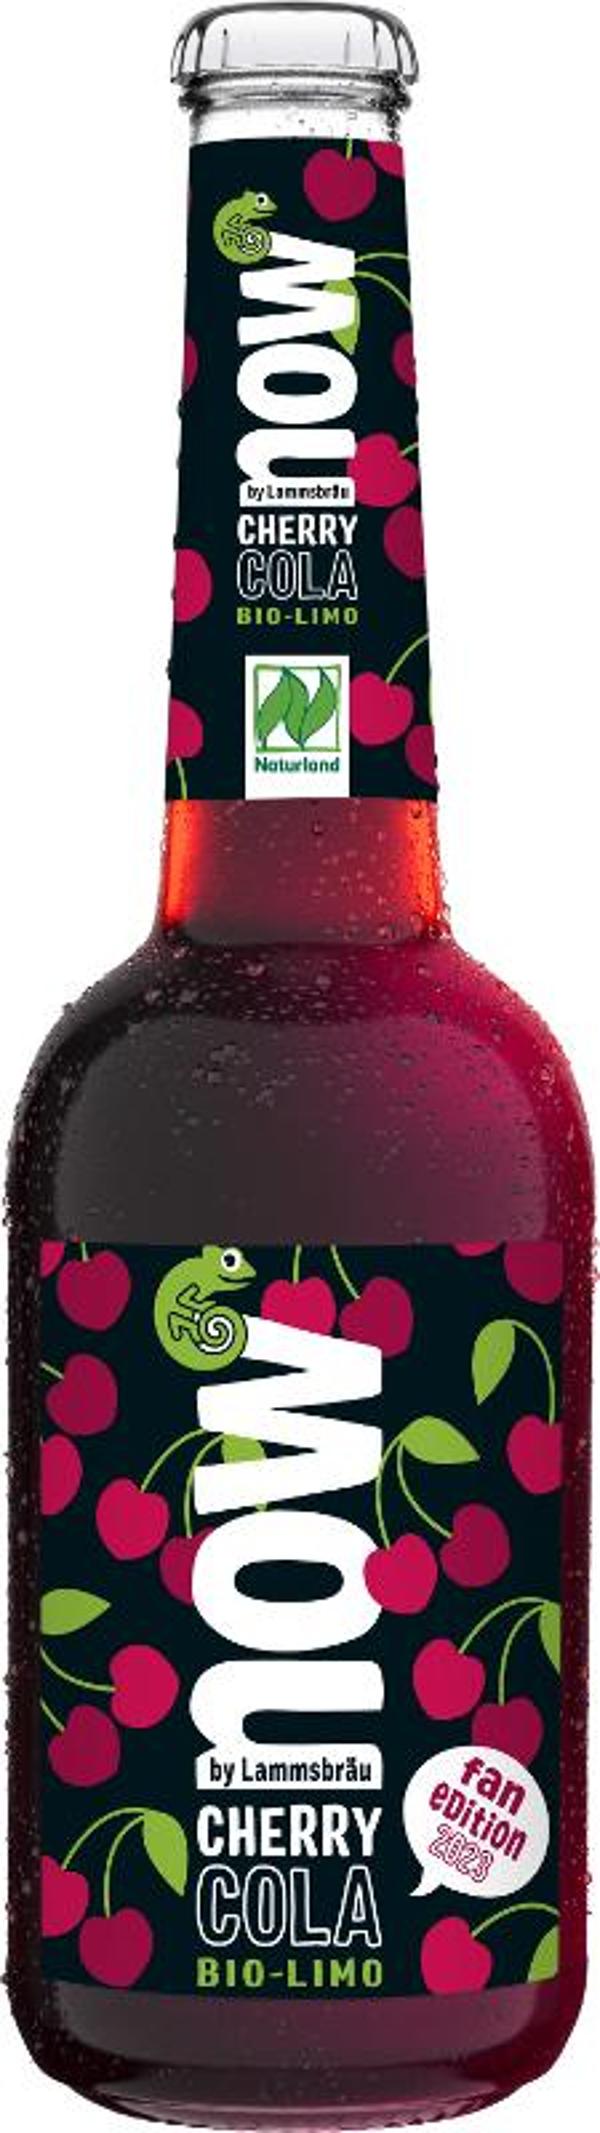 Produktfoto zu 10er Kasten now Cherry Cola von Lammsbräu